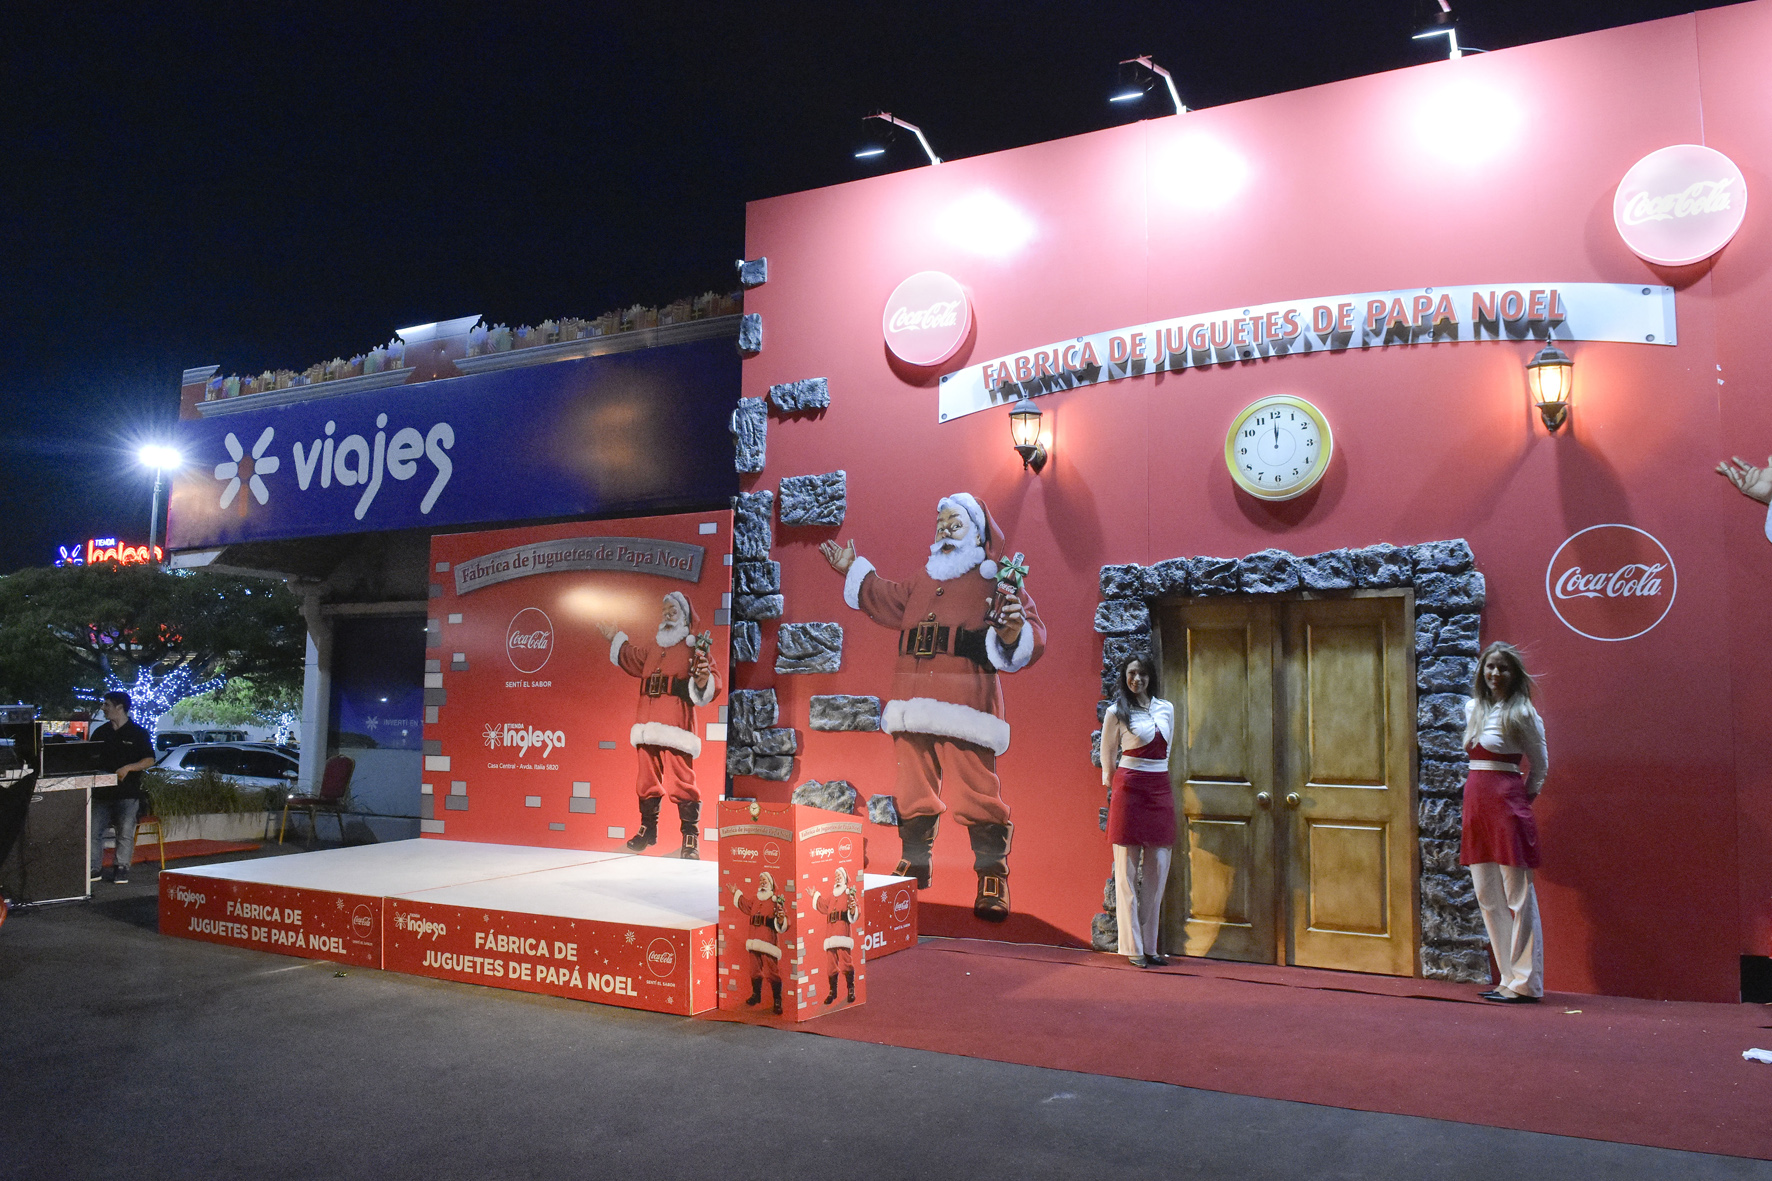 Tienda Inglesa y Coca-Cola hacen realidad el sueño de conocer la fábrica de juguetes de Papá Noel